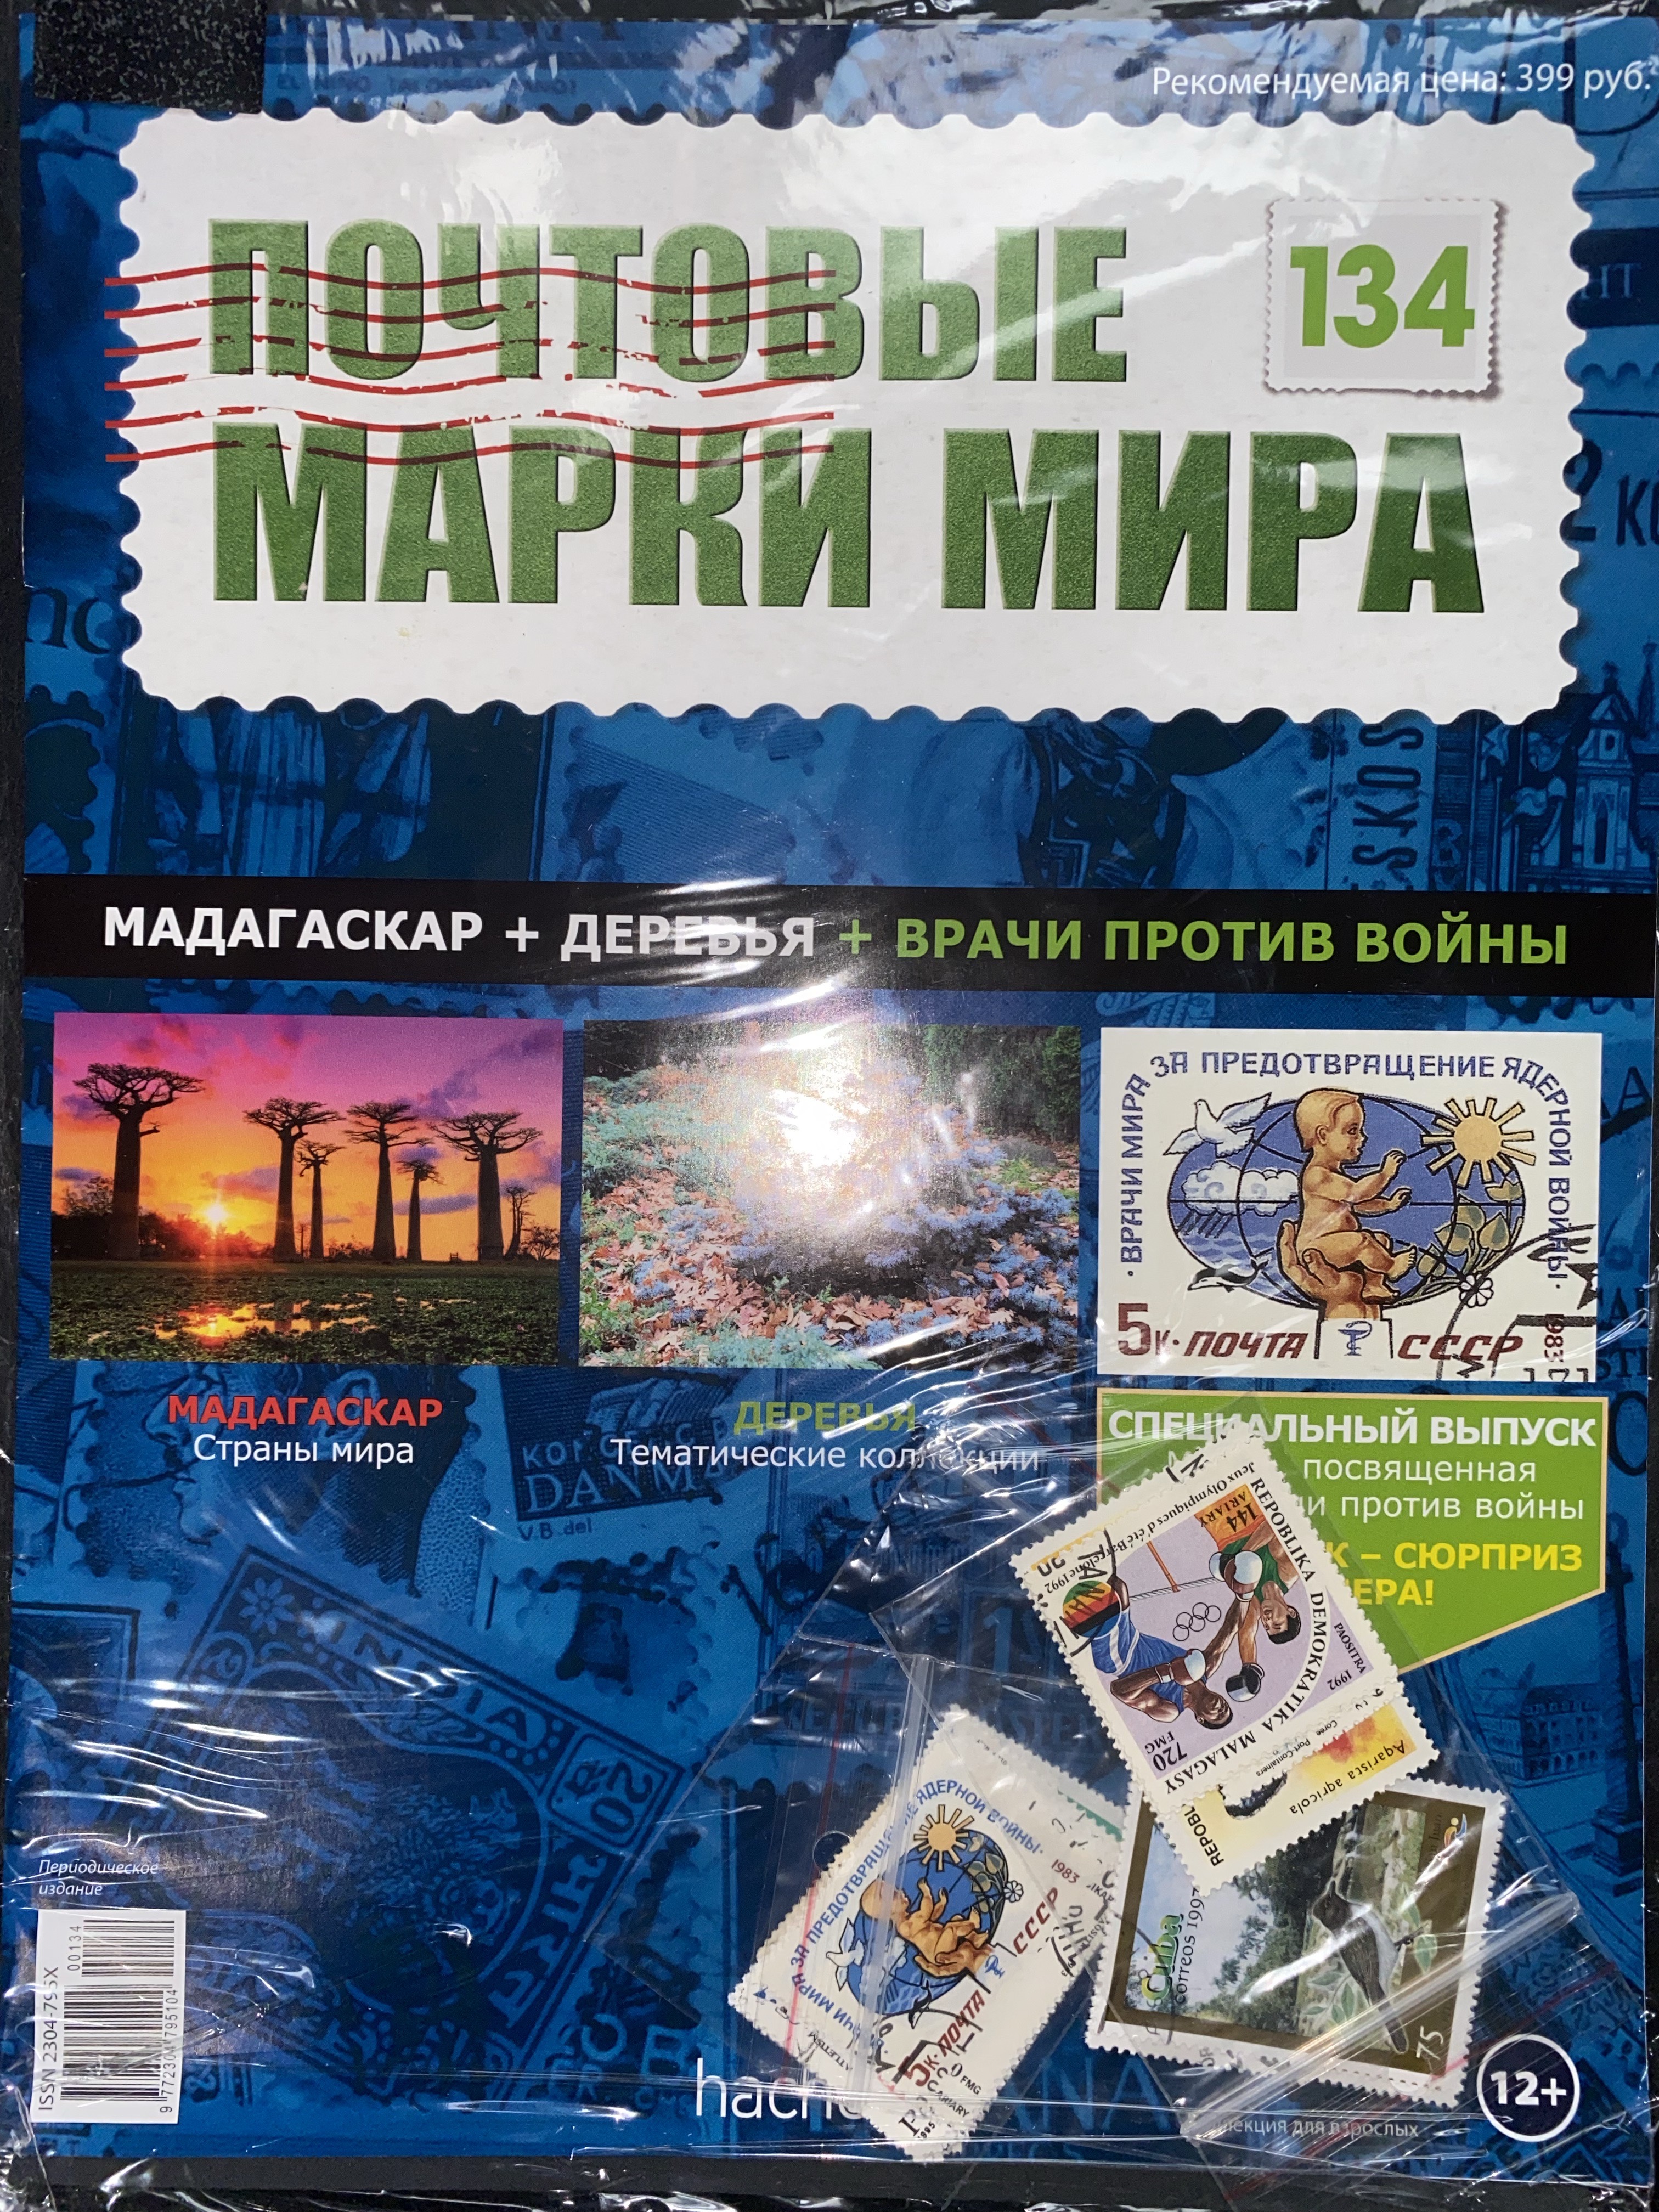 №134 Мадагаскар+Деревья+Врачи против войны+Лист для хранения марок